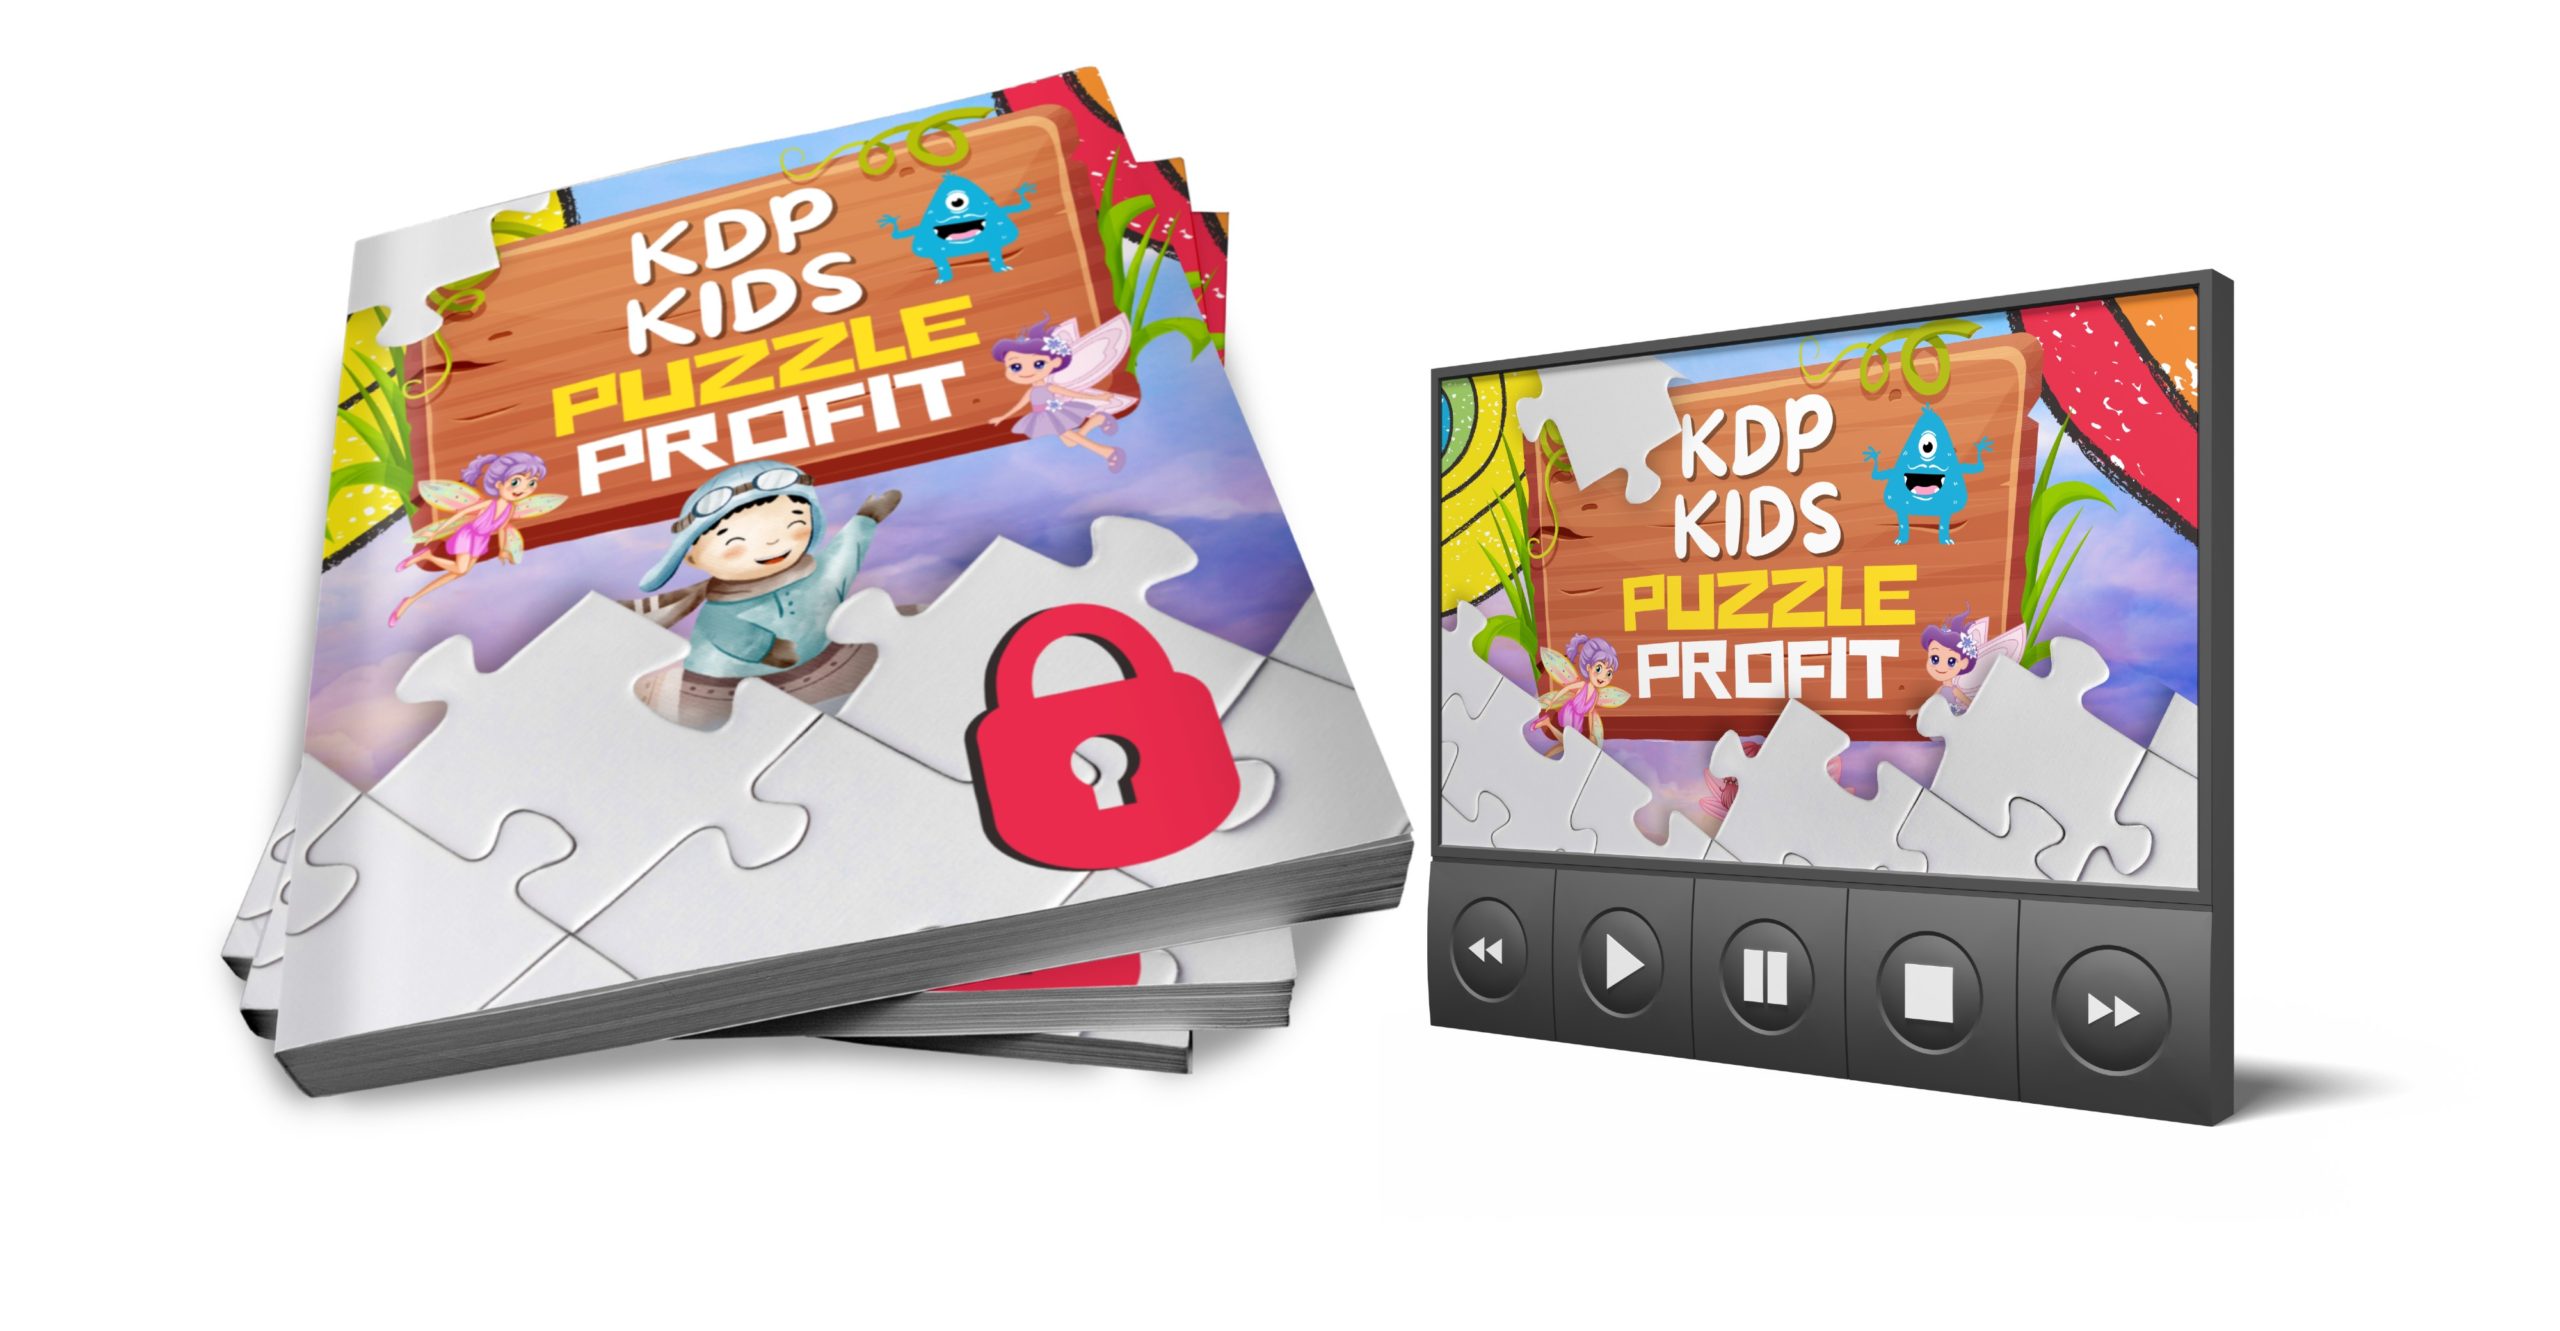 KDP Kids Puzzle Profit